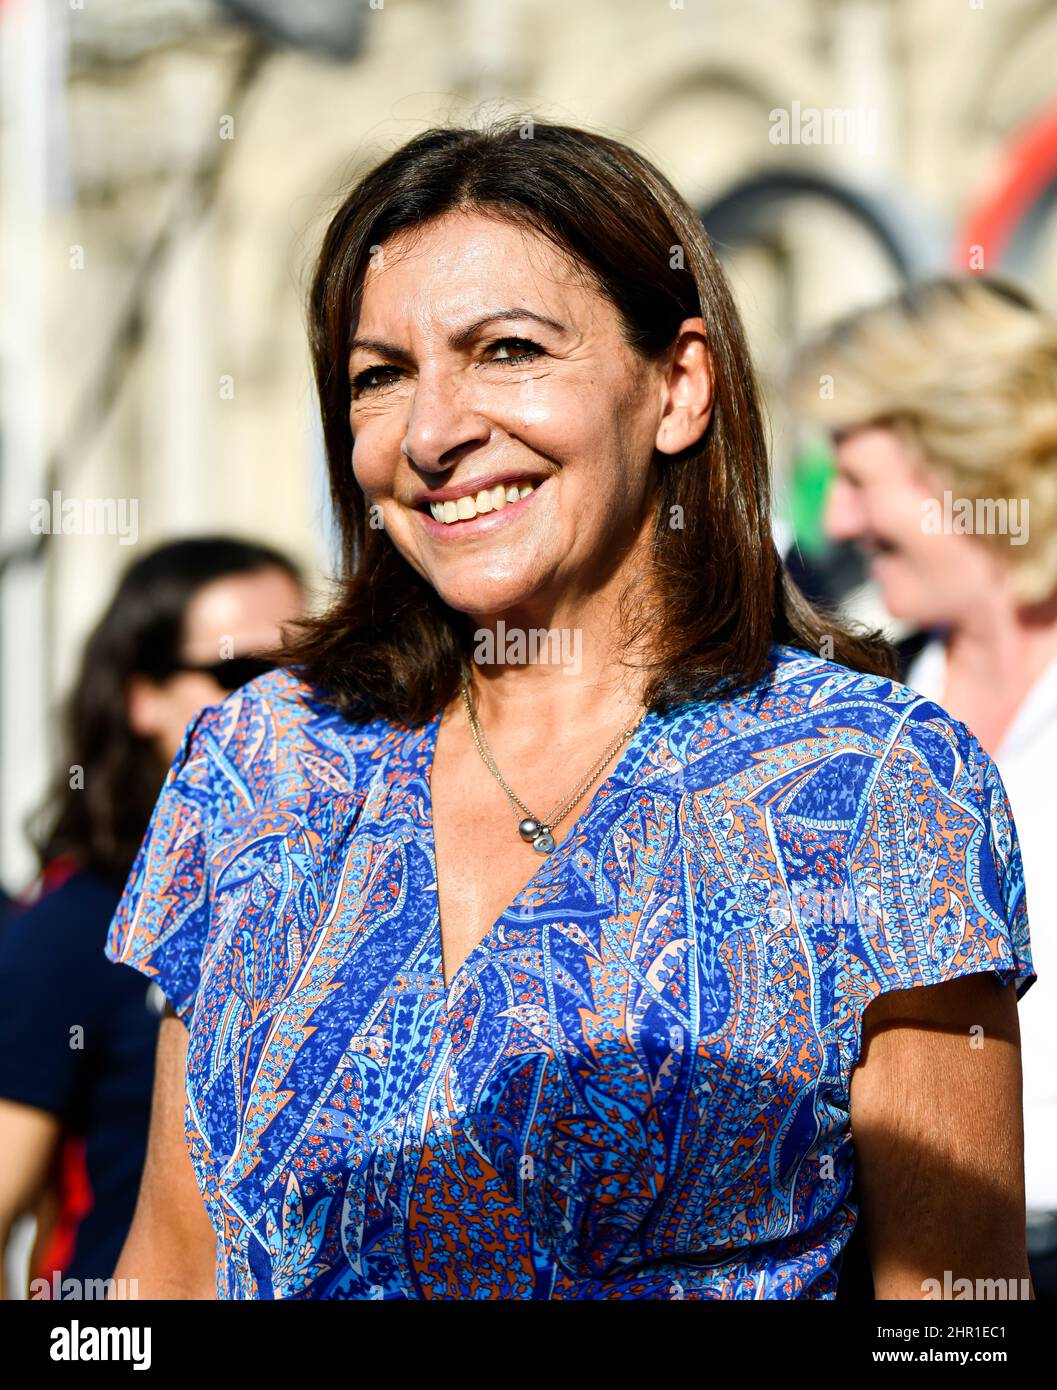 Maire de Paris Anne Hidalgo, candidate à l'élection présidentielle française de 2022, à l'Hôtel de ville, Paris, France, le 6 septembre 2021. Banque D'Images